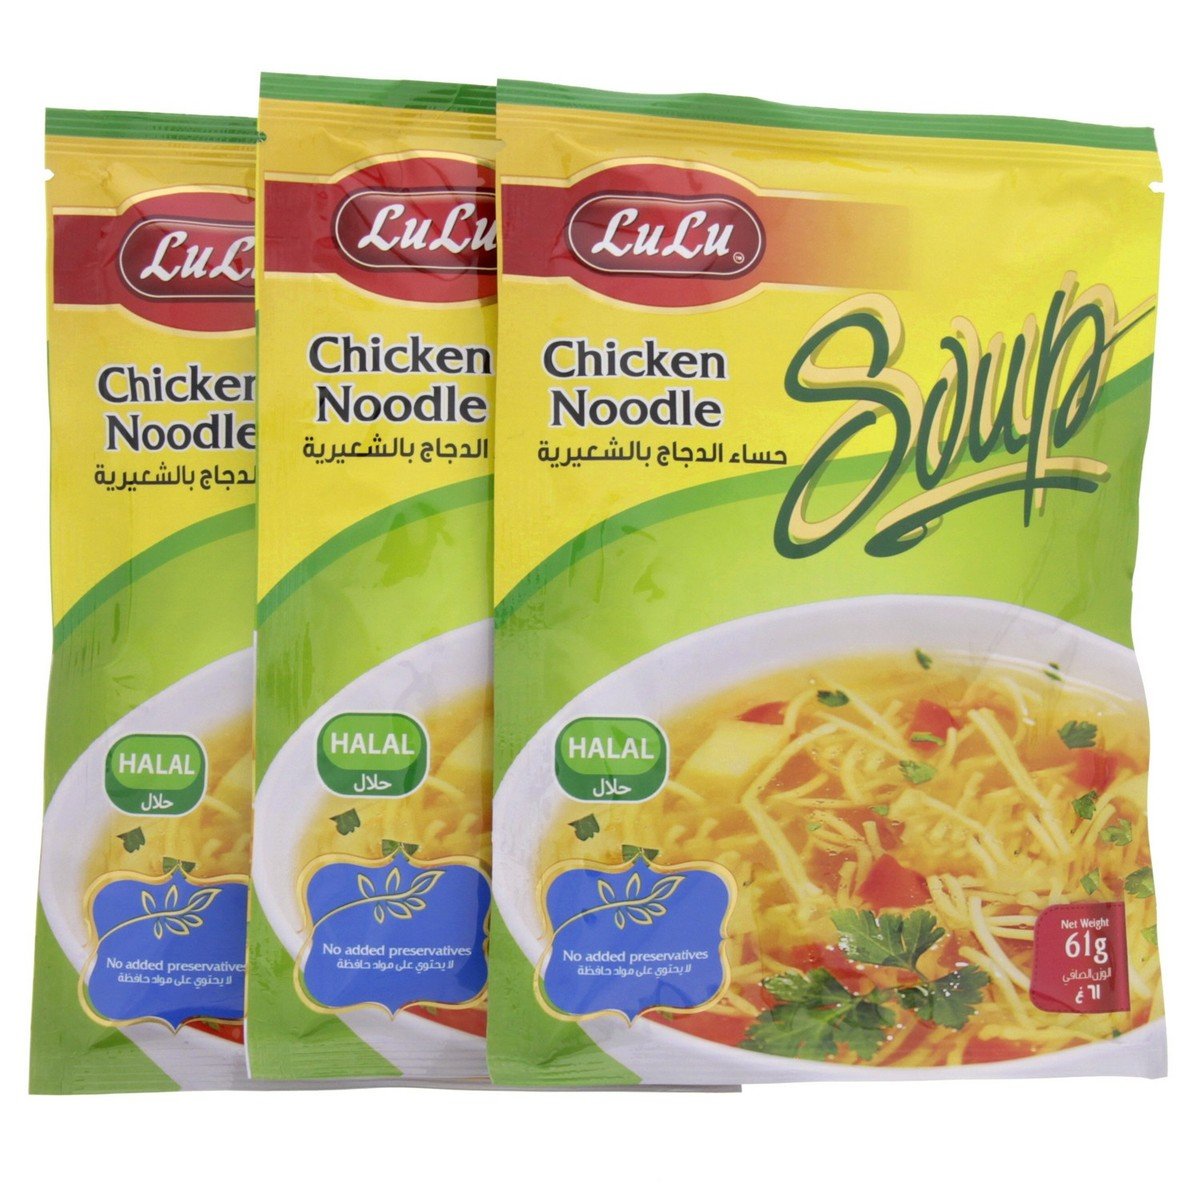 LuLu Chicken Noodle Soup 61g x 3pcs